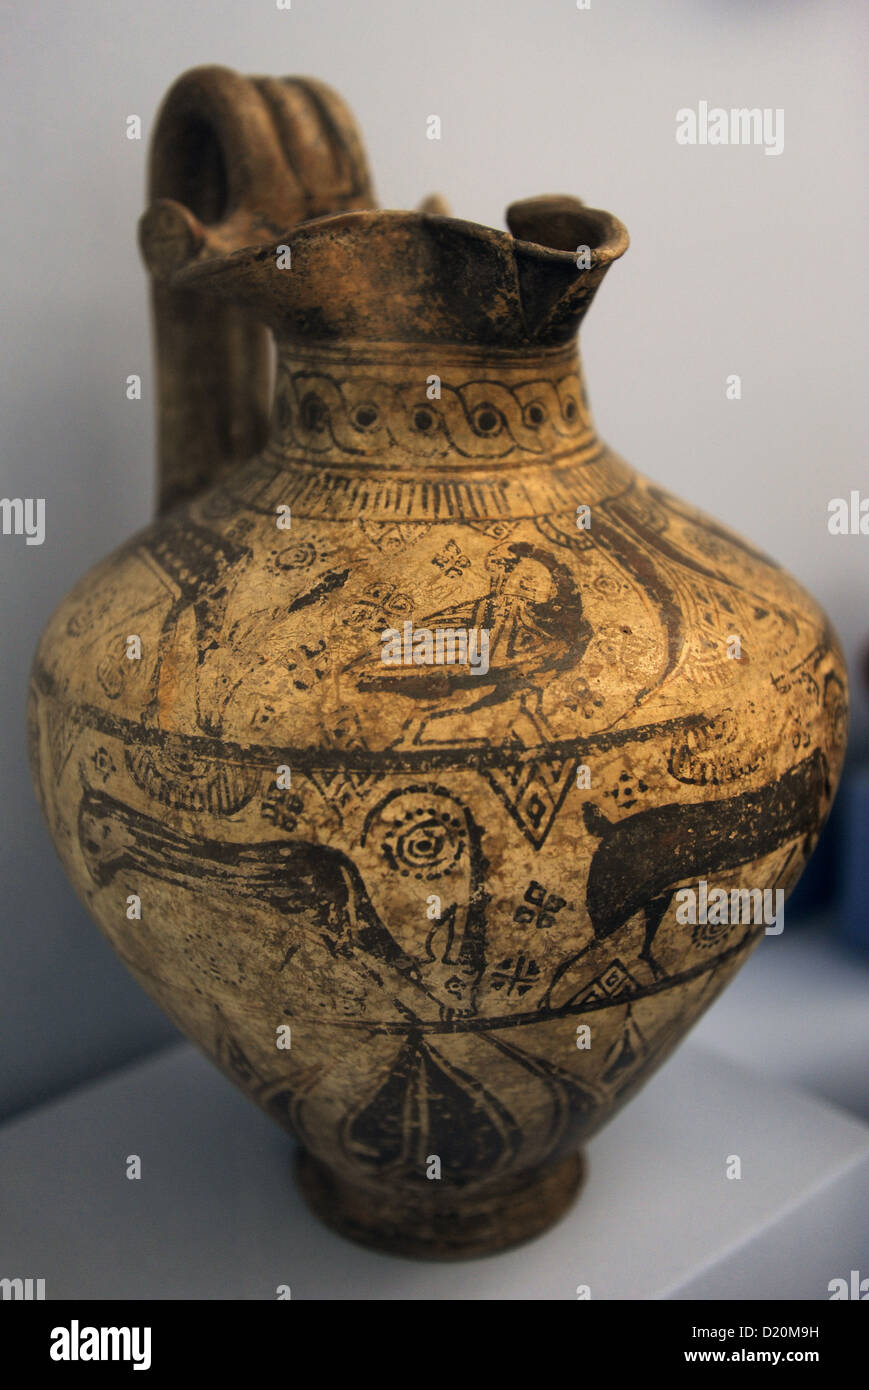 Keramik aus Milet, antiken Griechenland. 625-600 BC. Museum der bildenden Künste. Budapest. Ungarn. Stockfoto